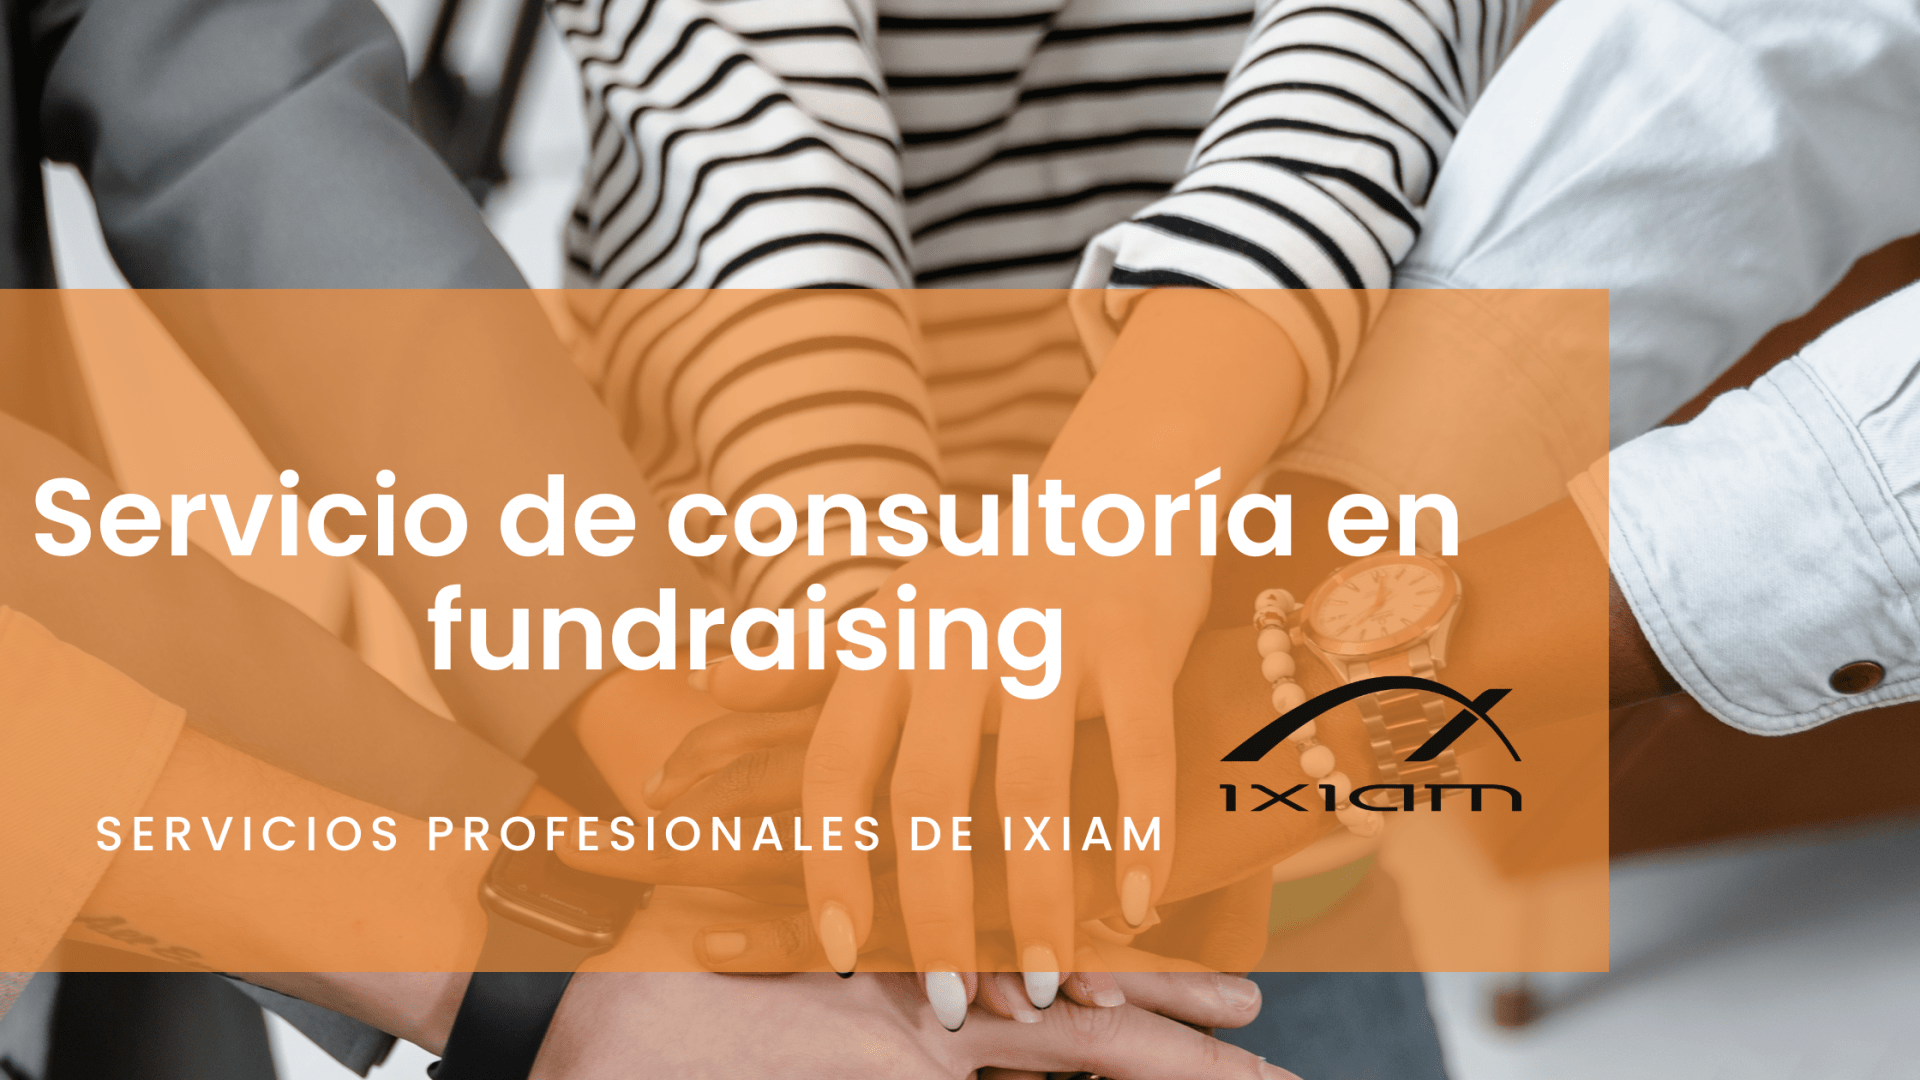 Servicios assoria en Fundraising by iXiam